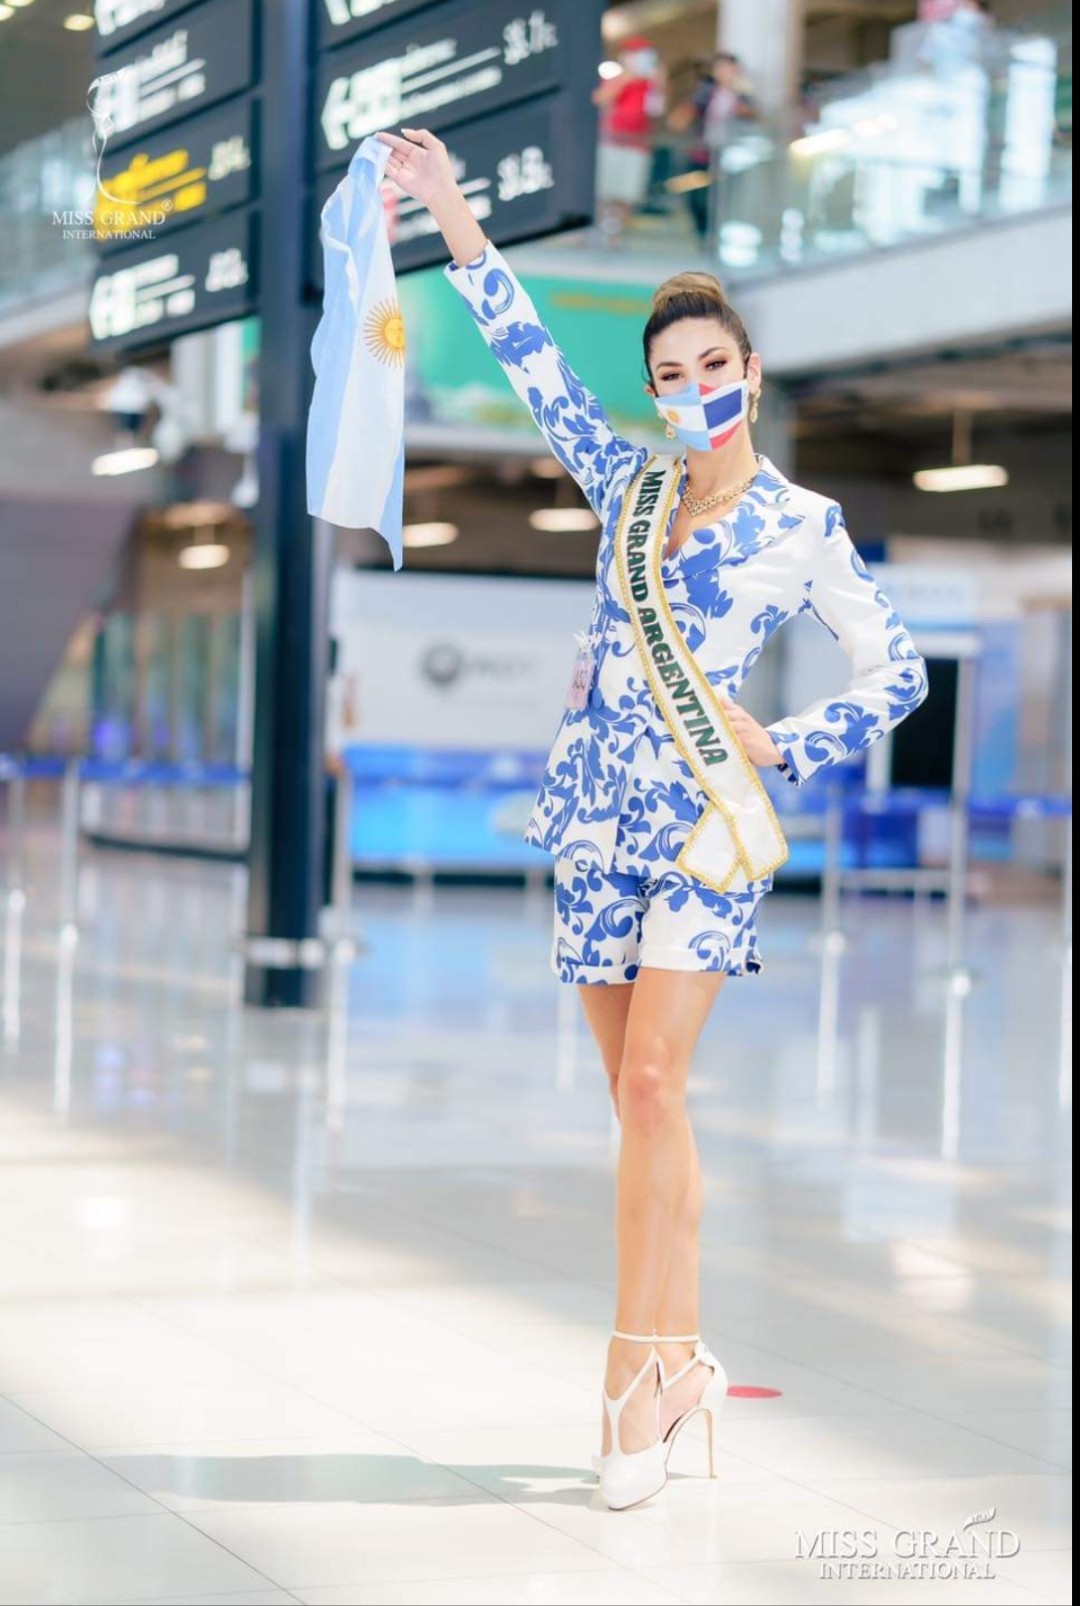 Hoa hậu Argentina cũng đeo khẩu trang có hình lá quốc kỳ, hợp tông màu với trang phục.